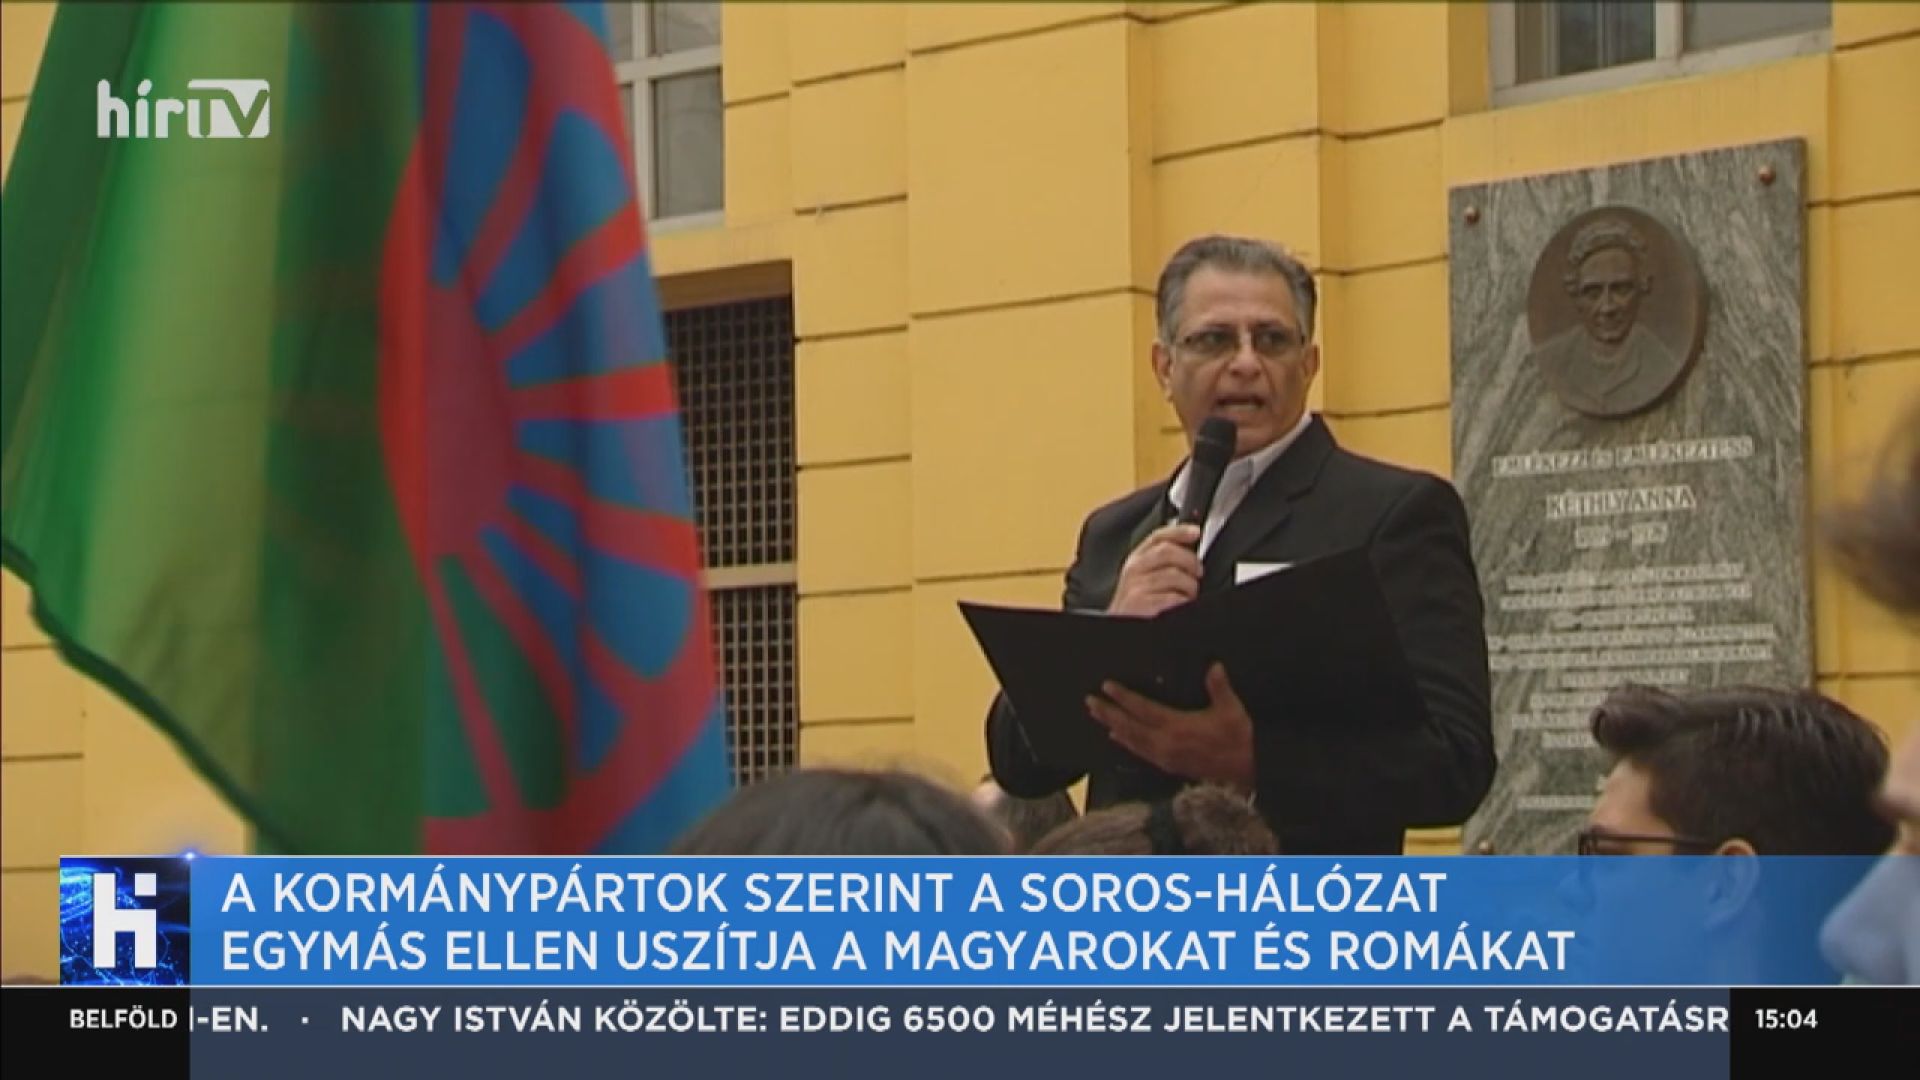 A kormánypártok szerint a Soros-hálózat egymás ellen uszítja a magyarokat és a romákat